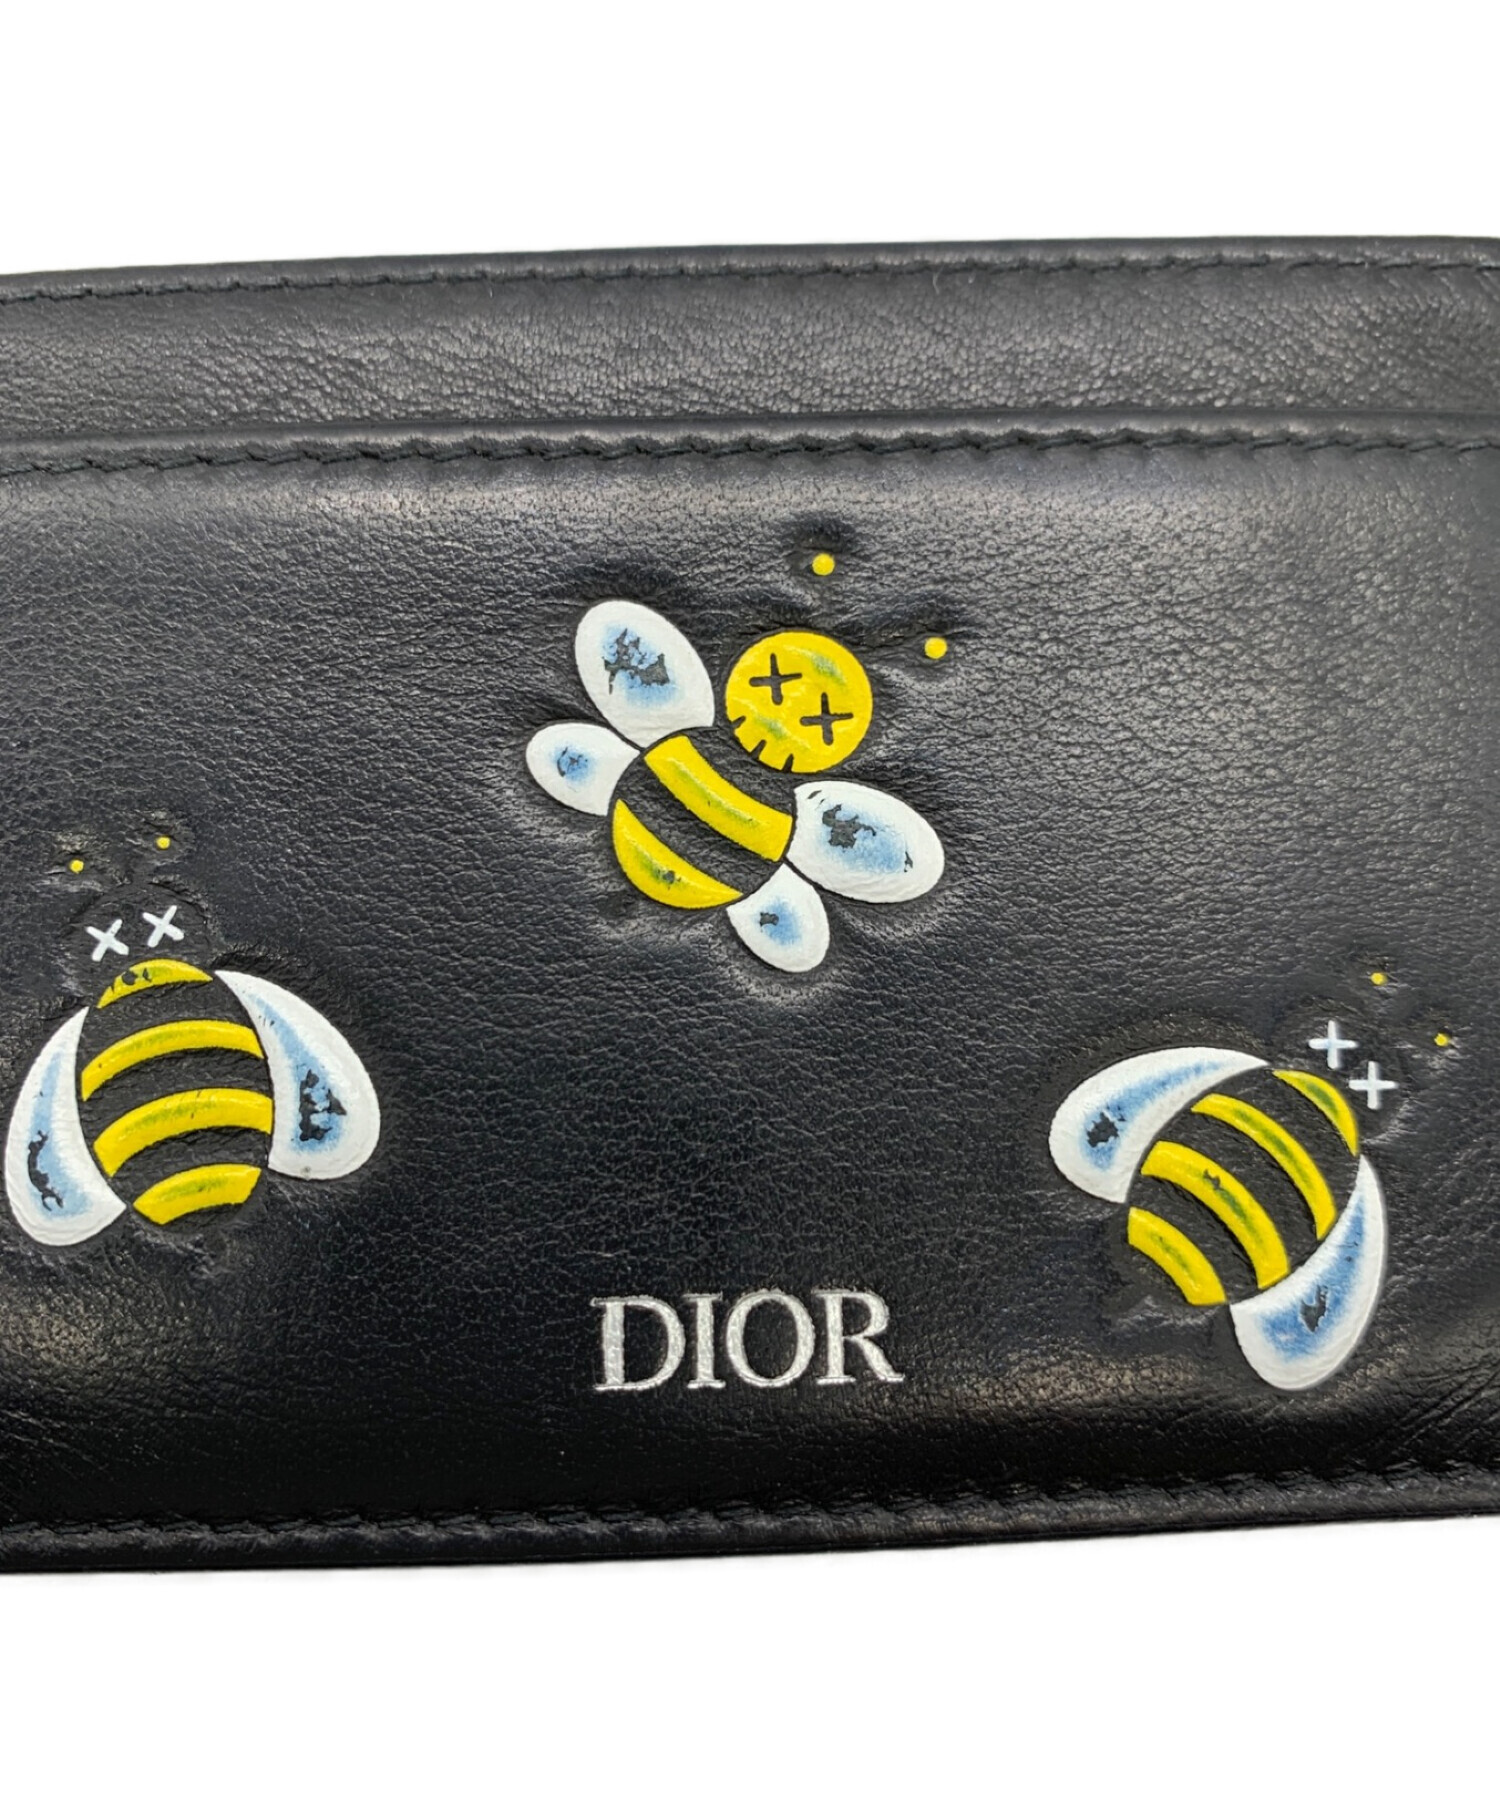 Dior kaws 財布